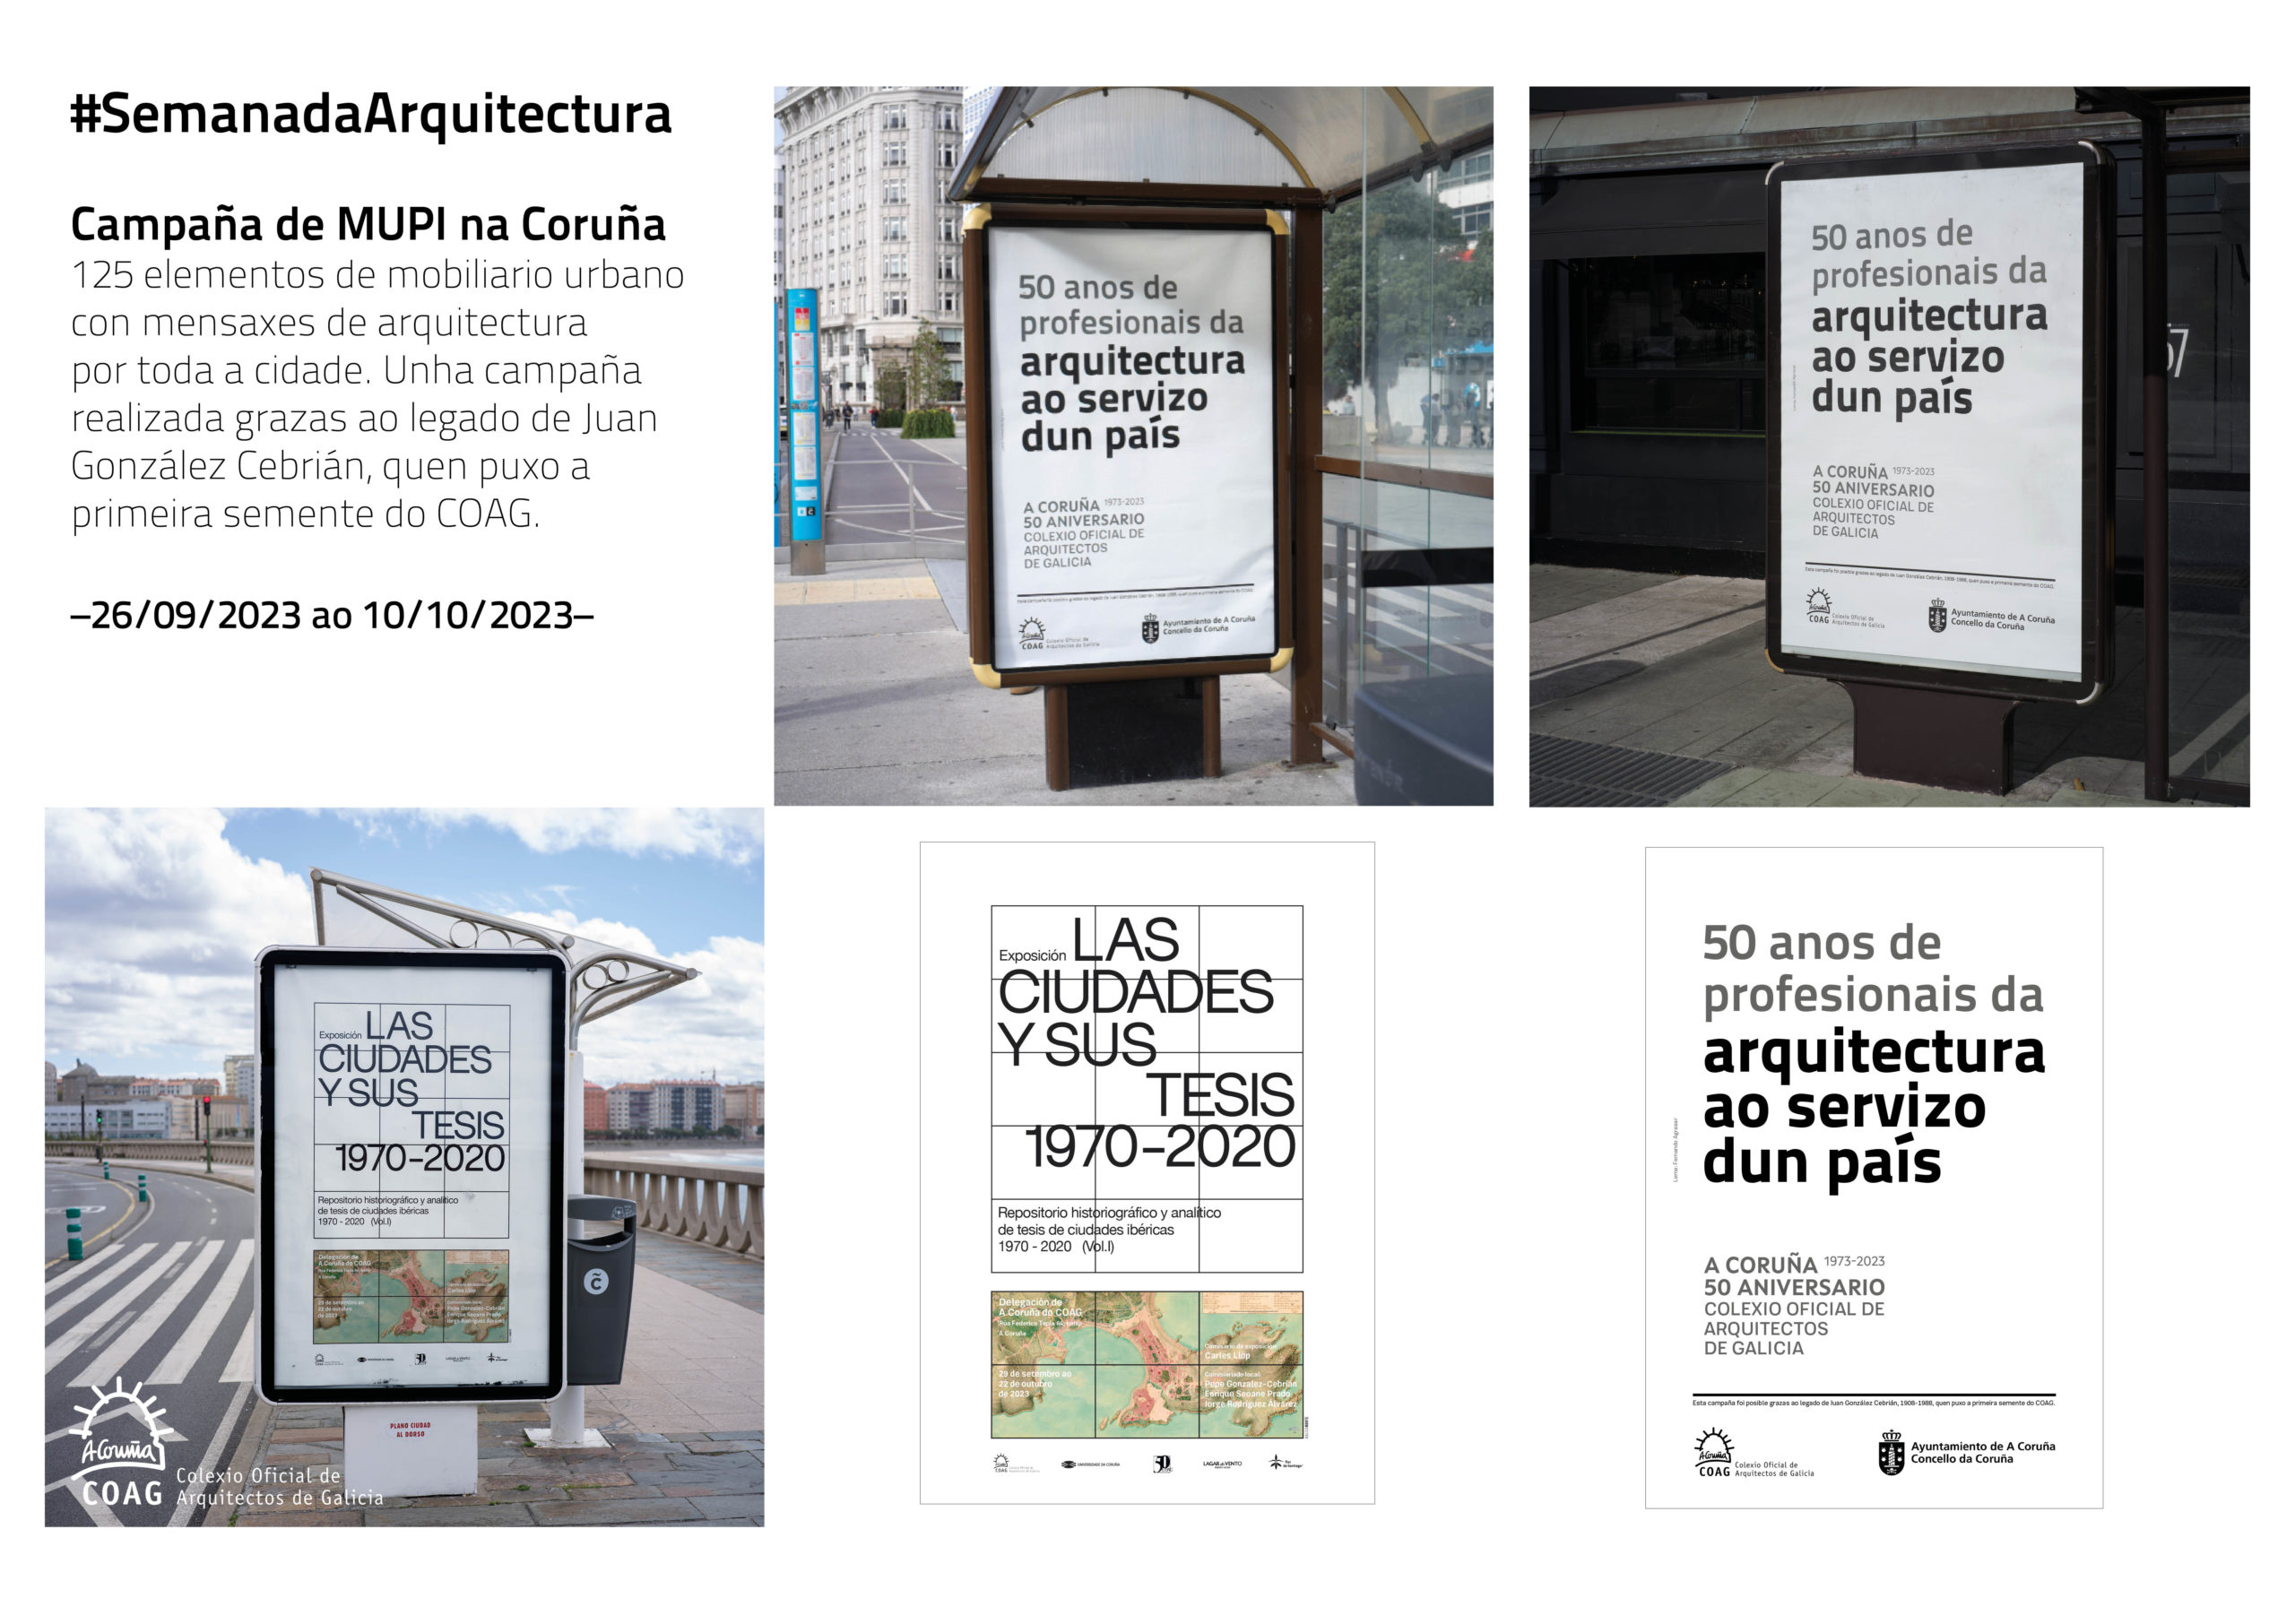 Campaña de Mobiliario Urbano para Información (MUPI) na Coruña